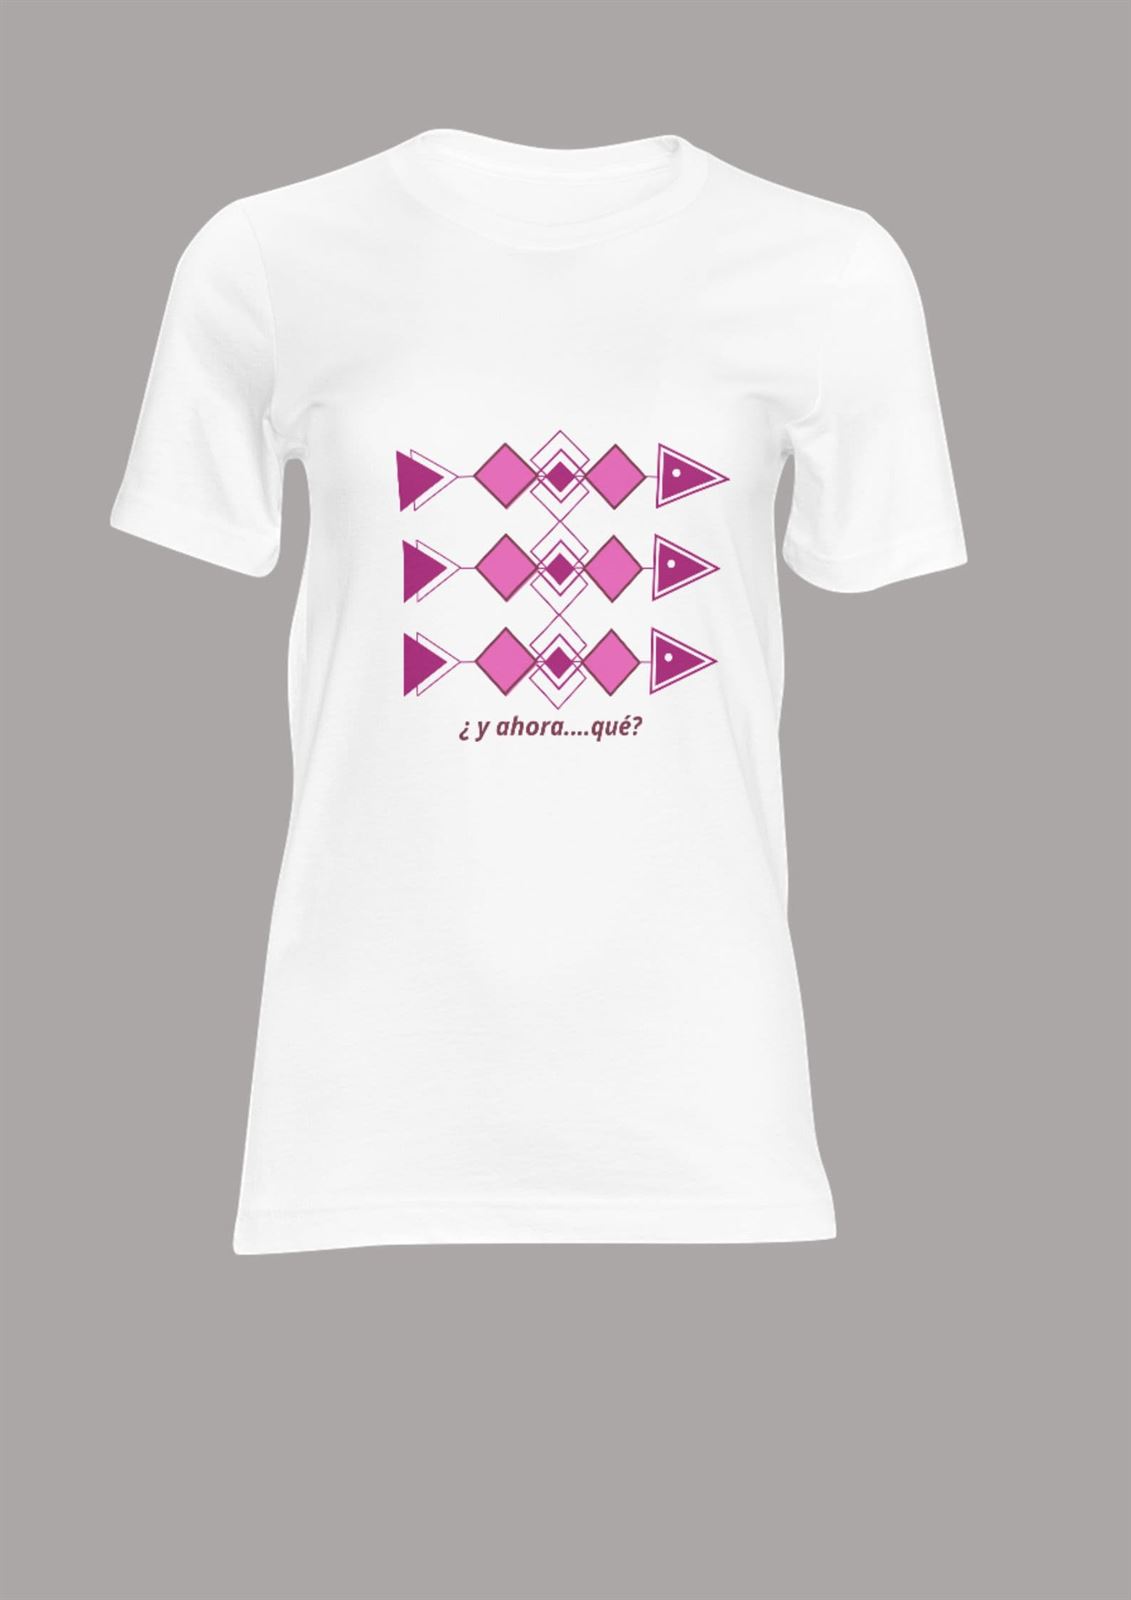 Camiseta "xoubiña" - Imagen 1